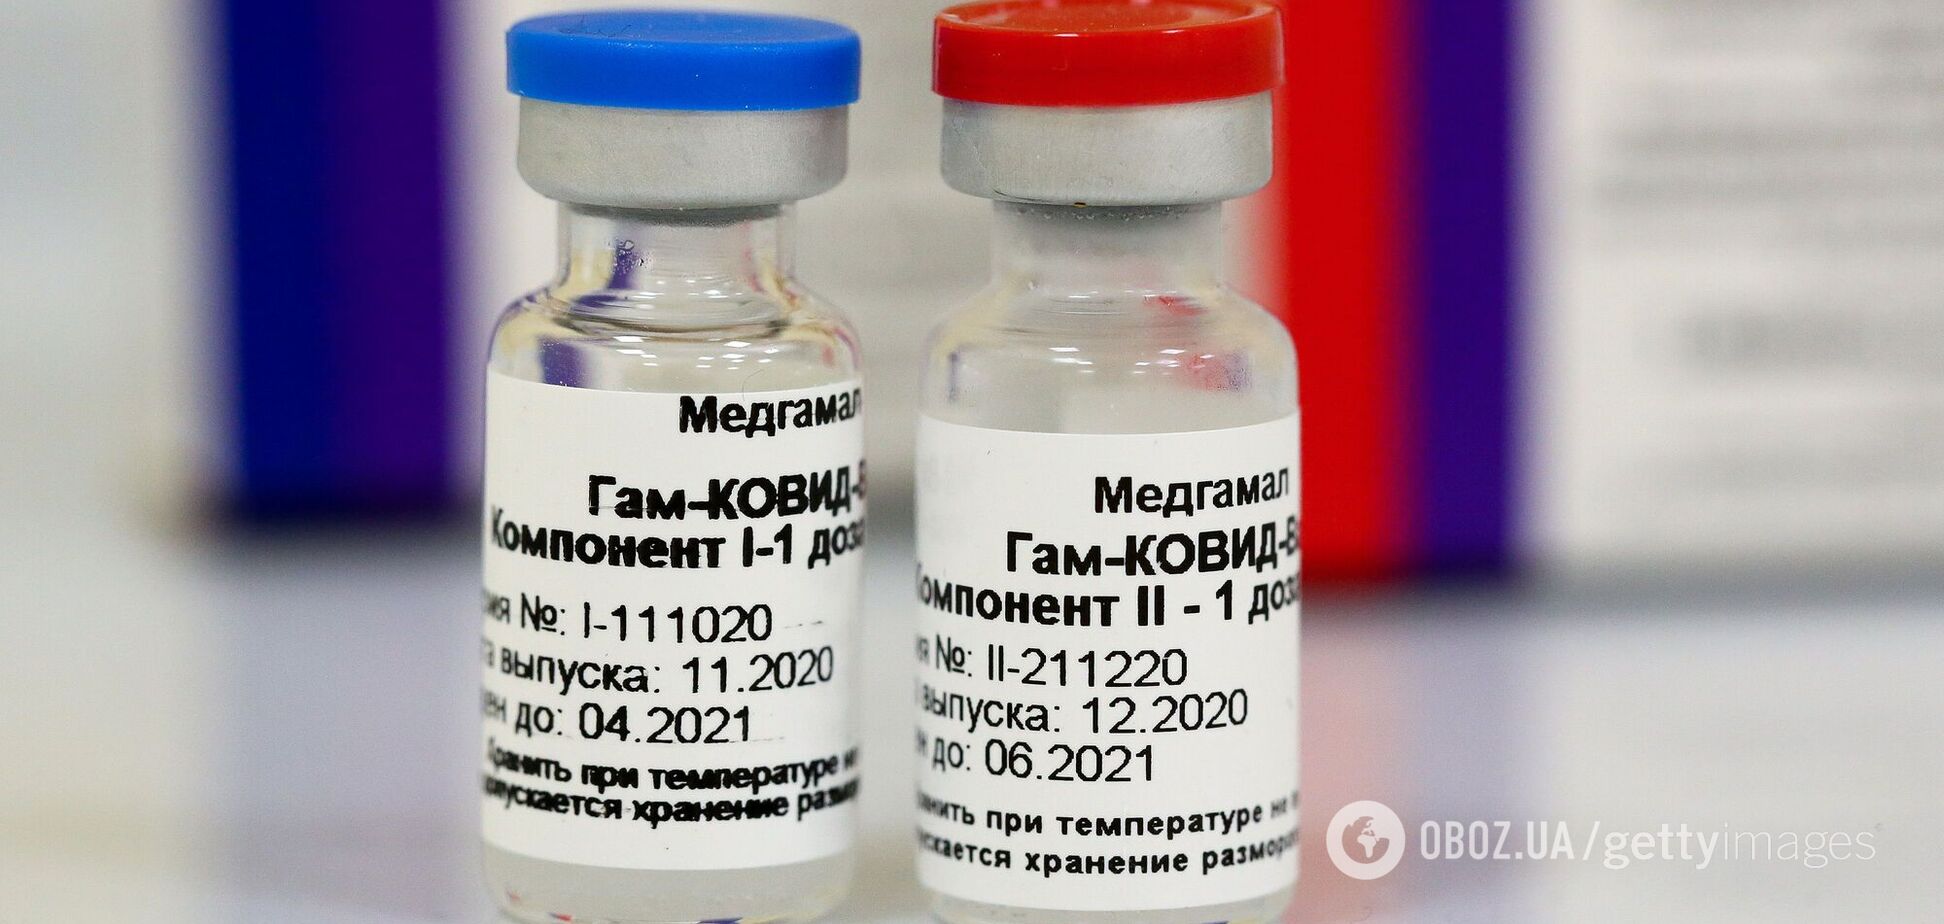 'Спутник V' – не вакцина: профессор Досенко сделал заявление